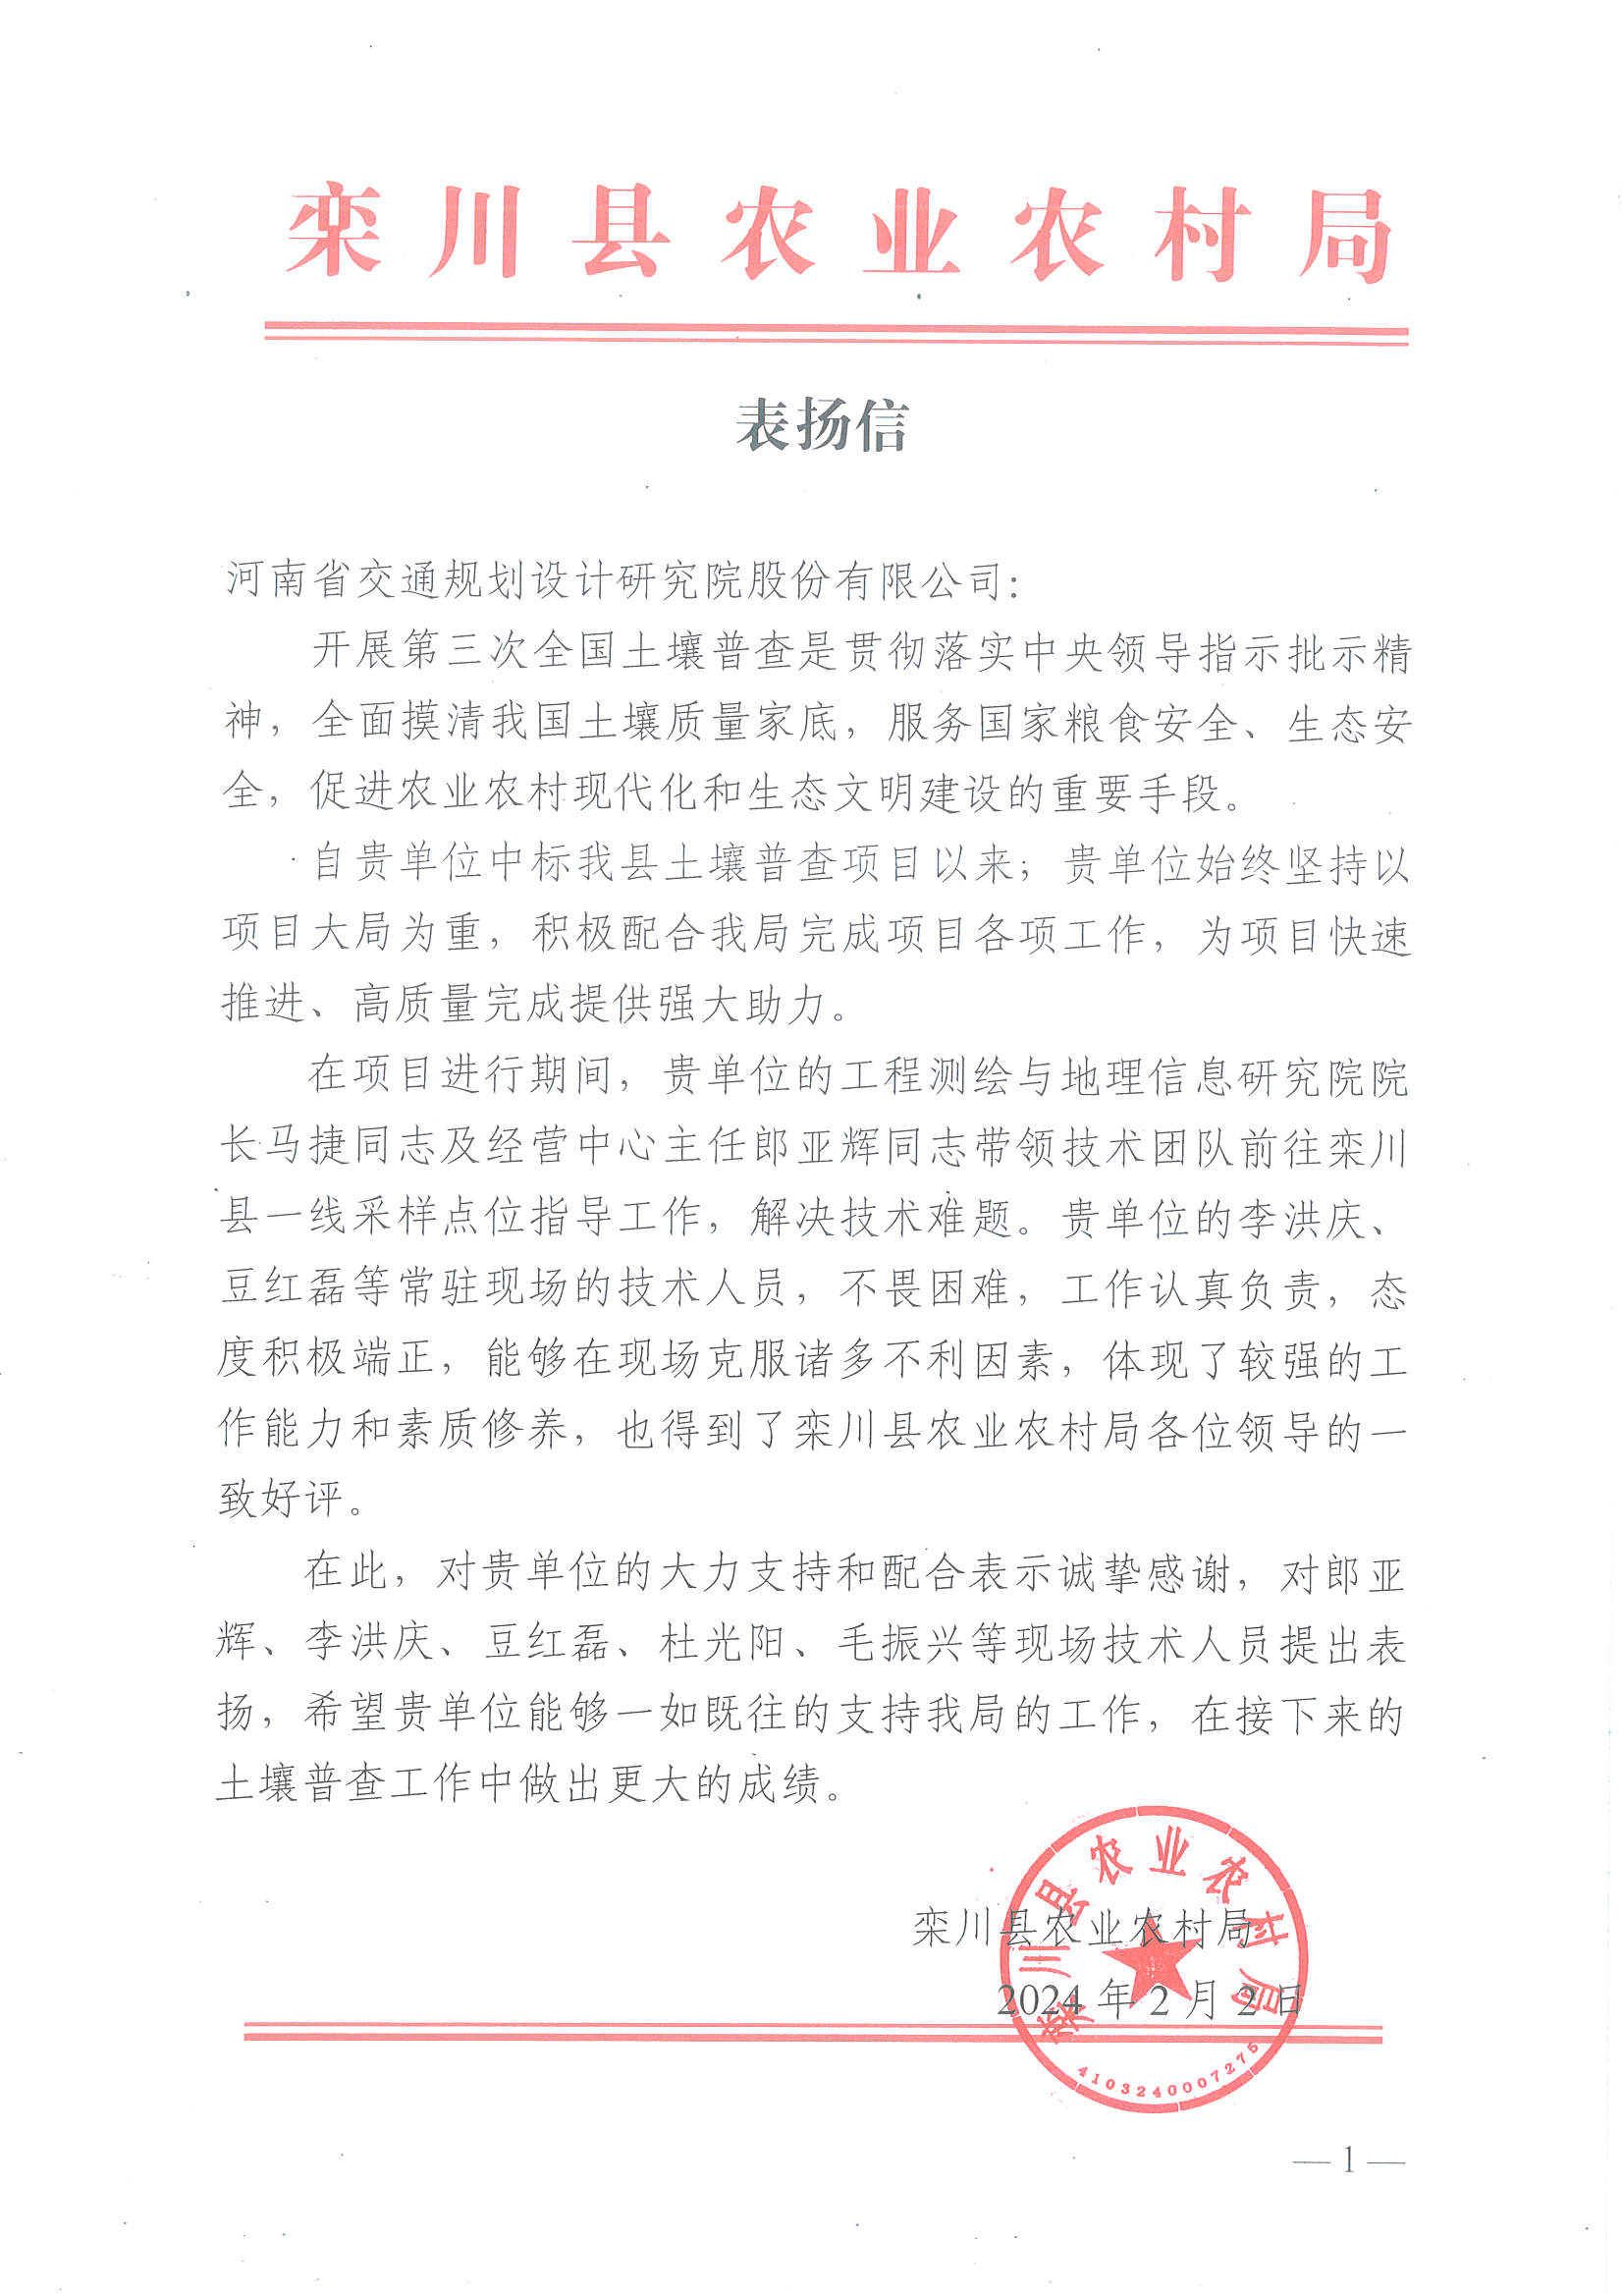 公司收到洛阳栾川县和宜阳县农业农村局发来的表扬信